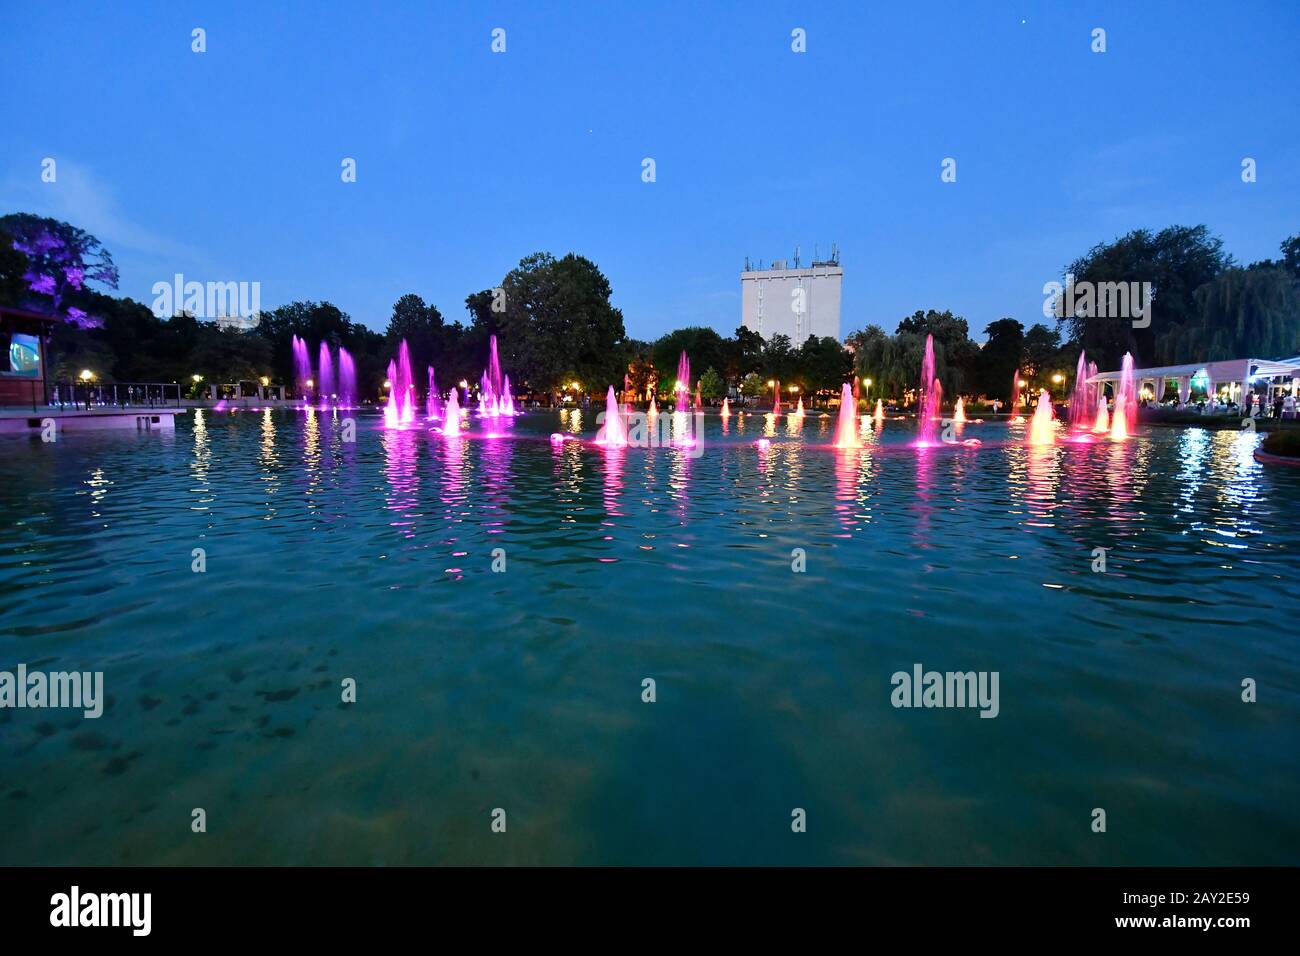 La Bulgaria, Plovdiv, fontane illuminate nel lago di Tsar Simeons Garden, la città diventa capitale europea della cultura 2019 Foto Stock